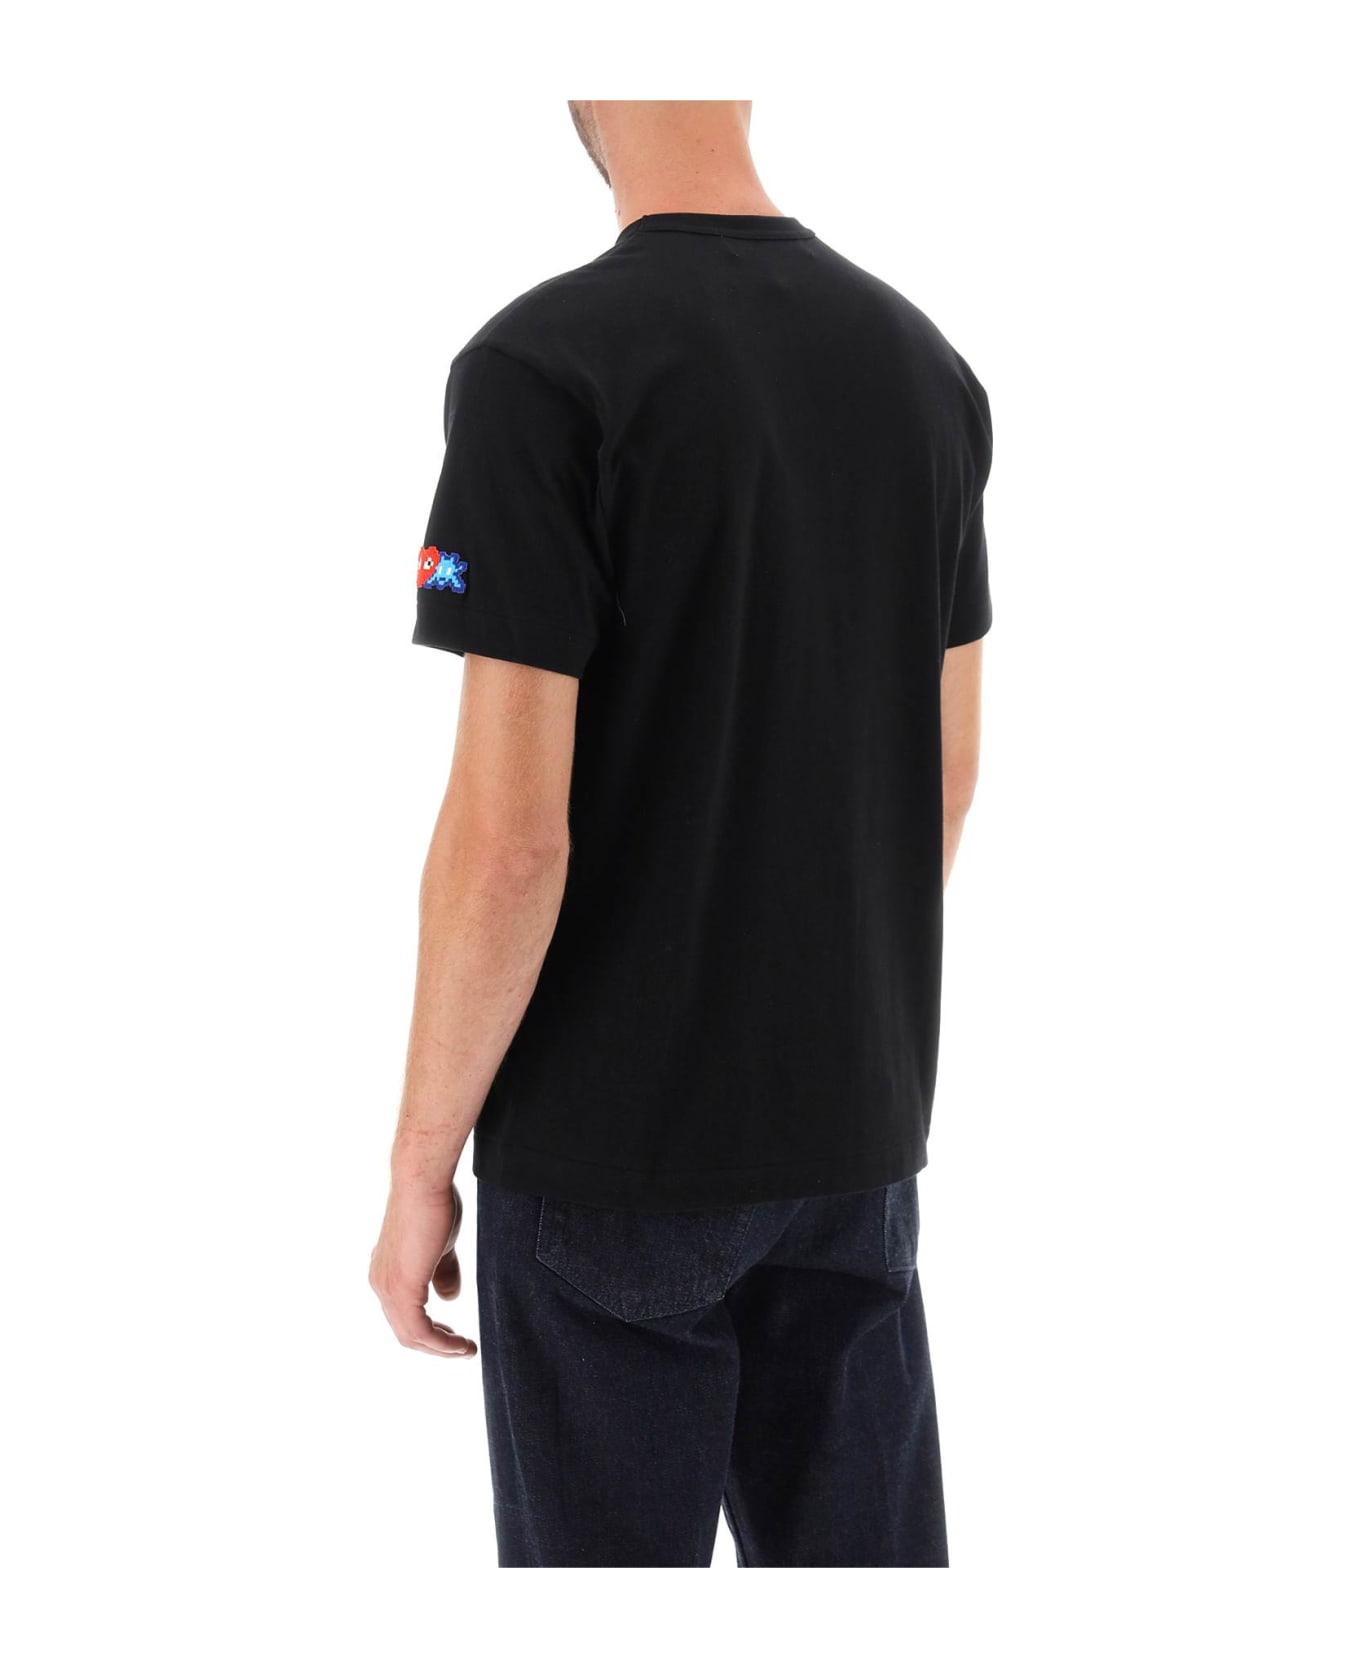 Comme des Garçons Play T-shirt With Pixel Patch - BLACK シャツ